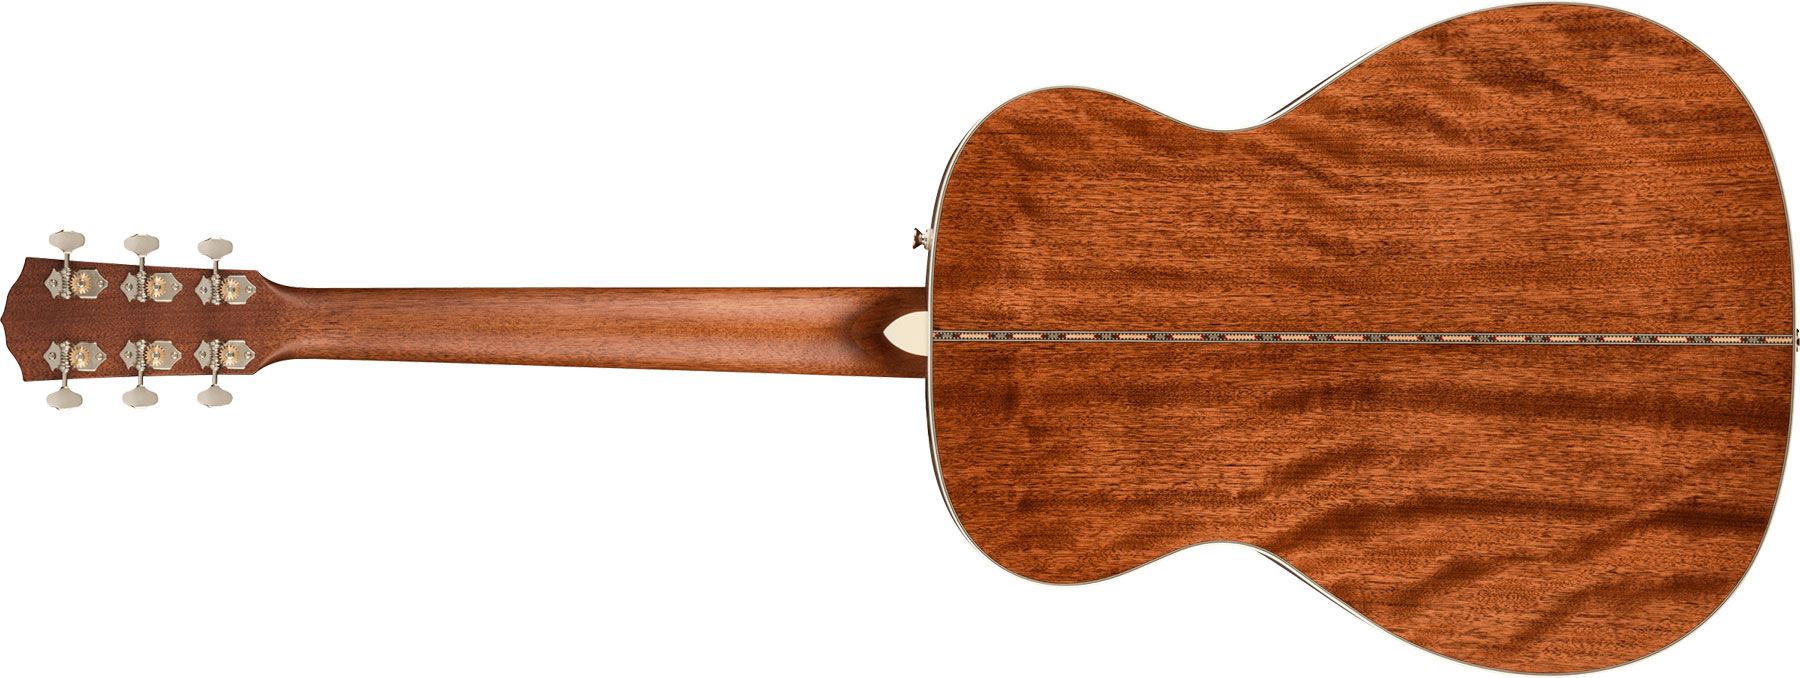 Fender Po-220e Paramount Orchestra Model Om Acajou Ova - Natural - Elektroakustische Gitarre - Variation 1